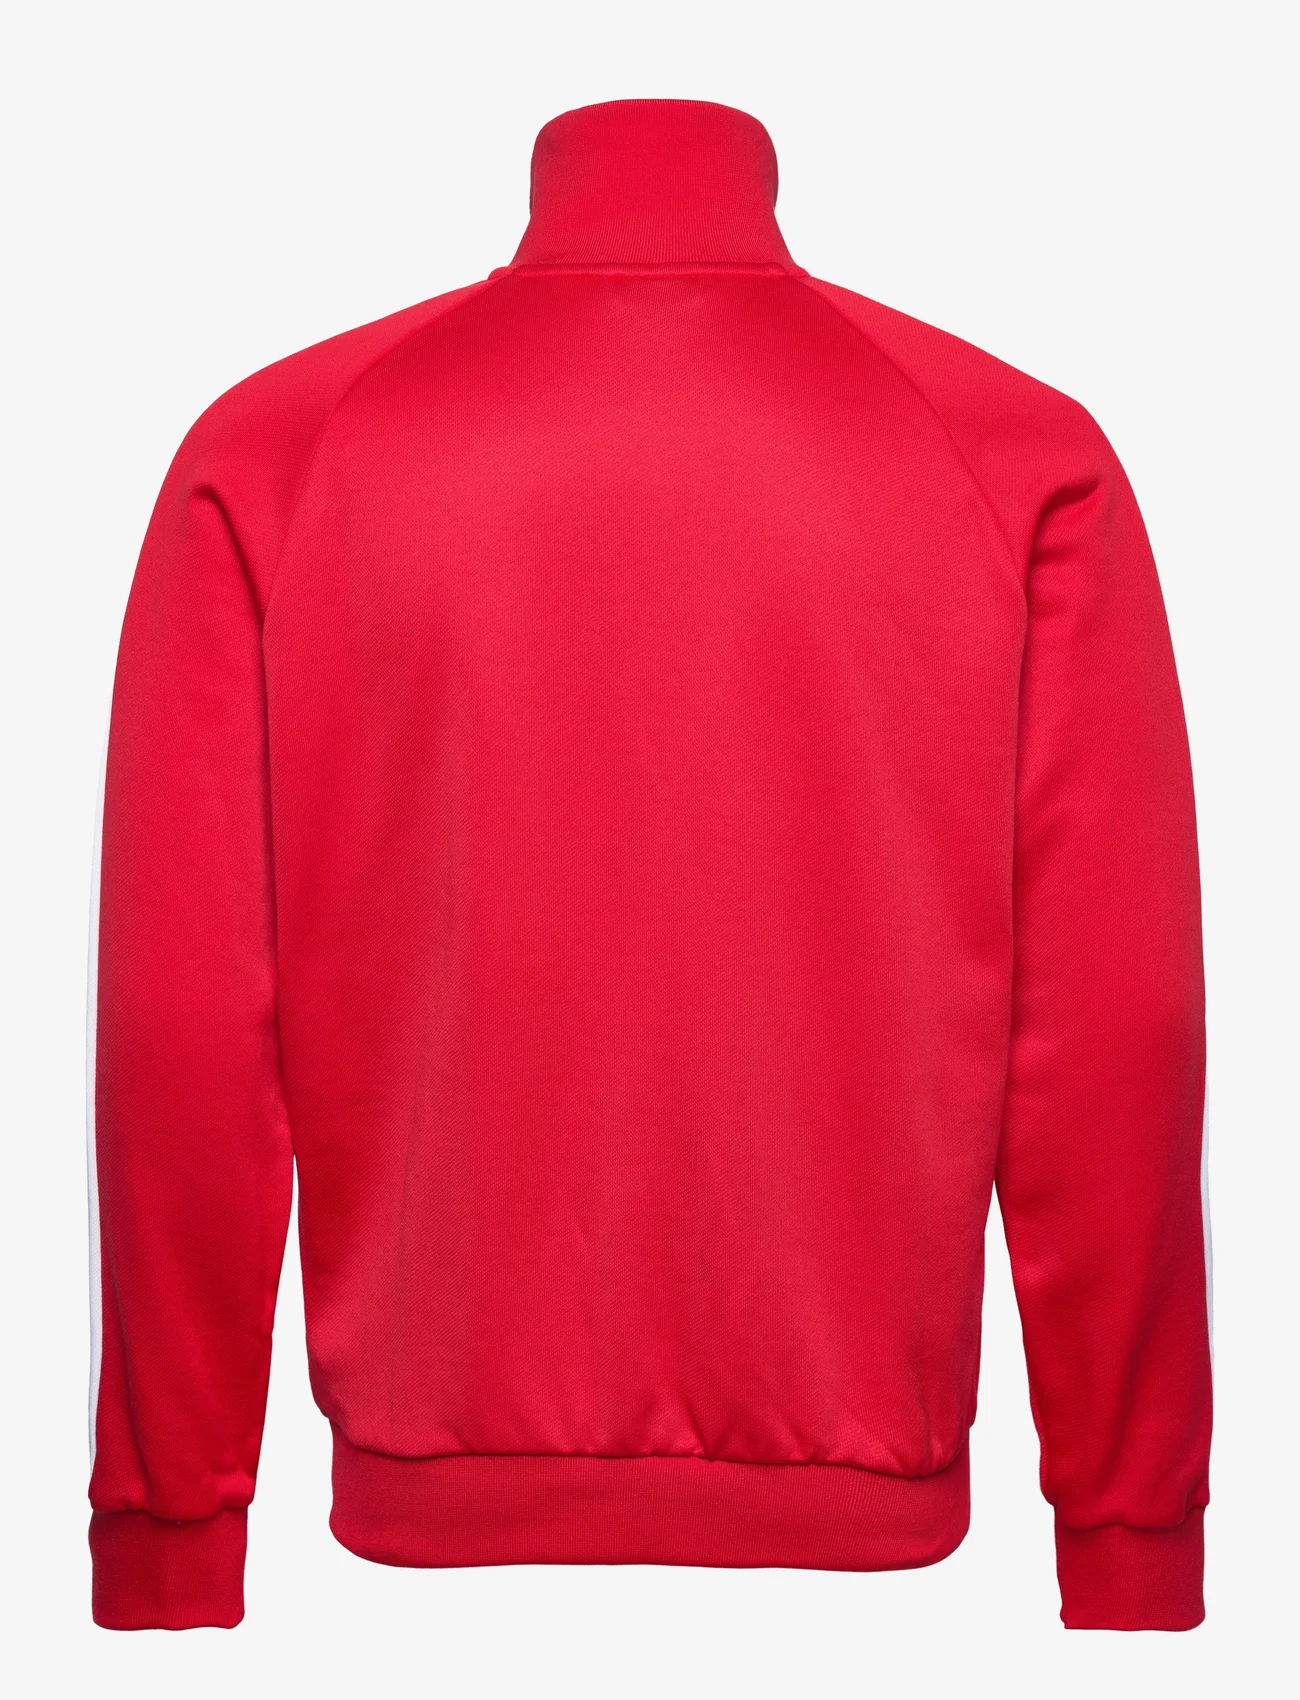 PUMA - Iconic T7 Track Jacket PT - sportiska stila džemperi - high risk red - 1